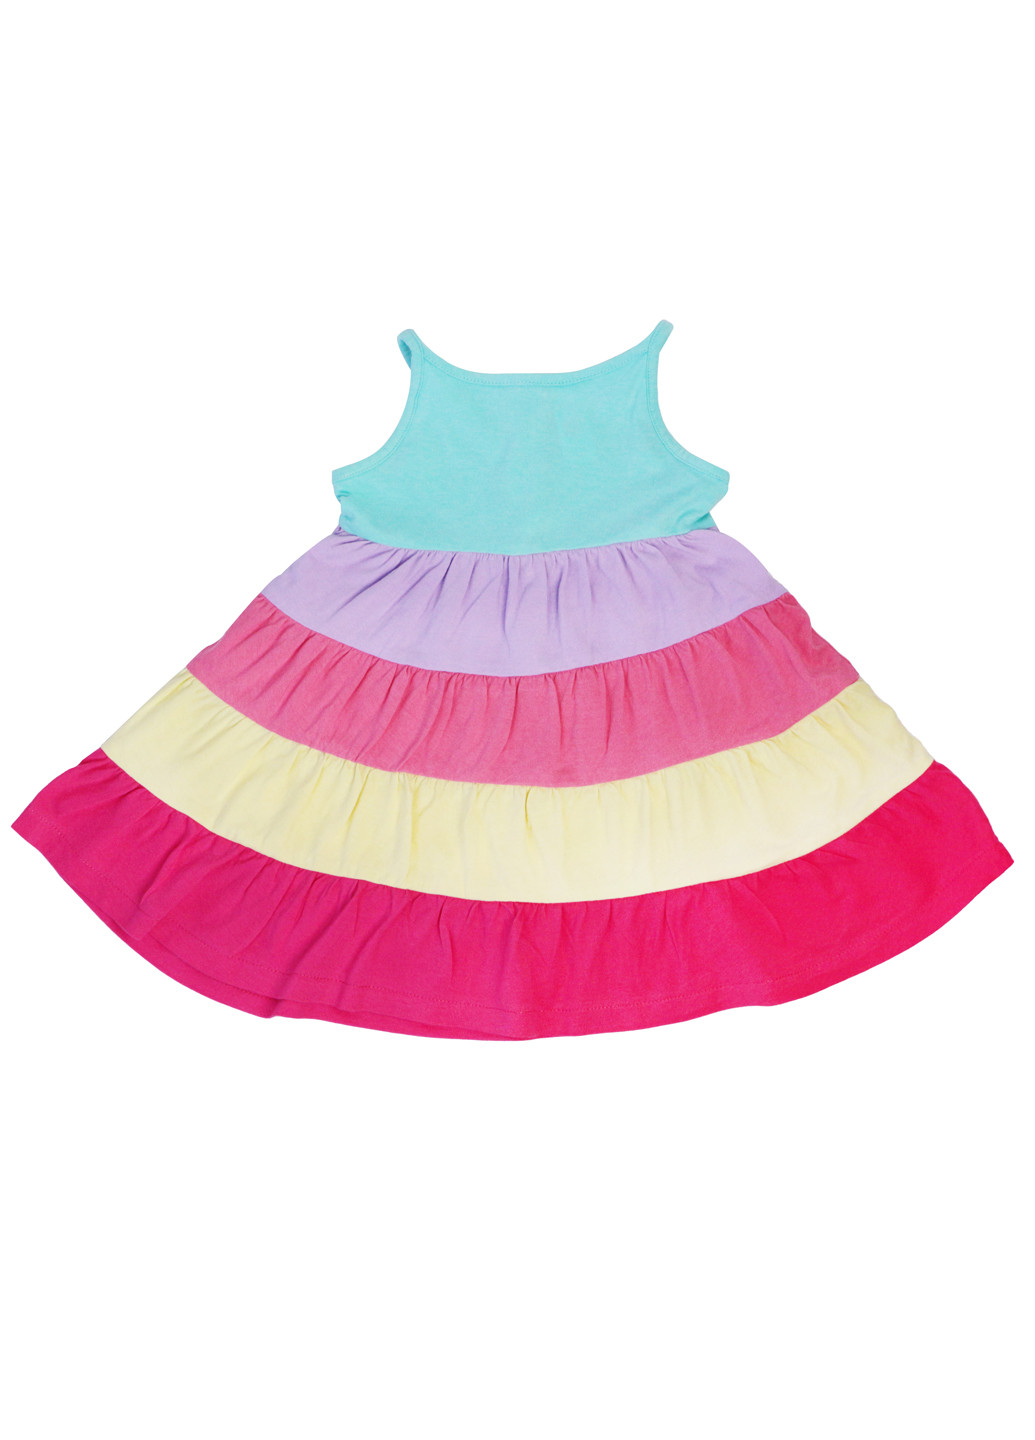 Летний сарафан для девочки с завышенной талией в полоску 74 разноцветный Baby Club